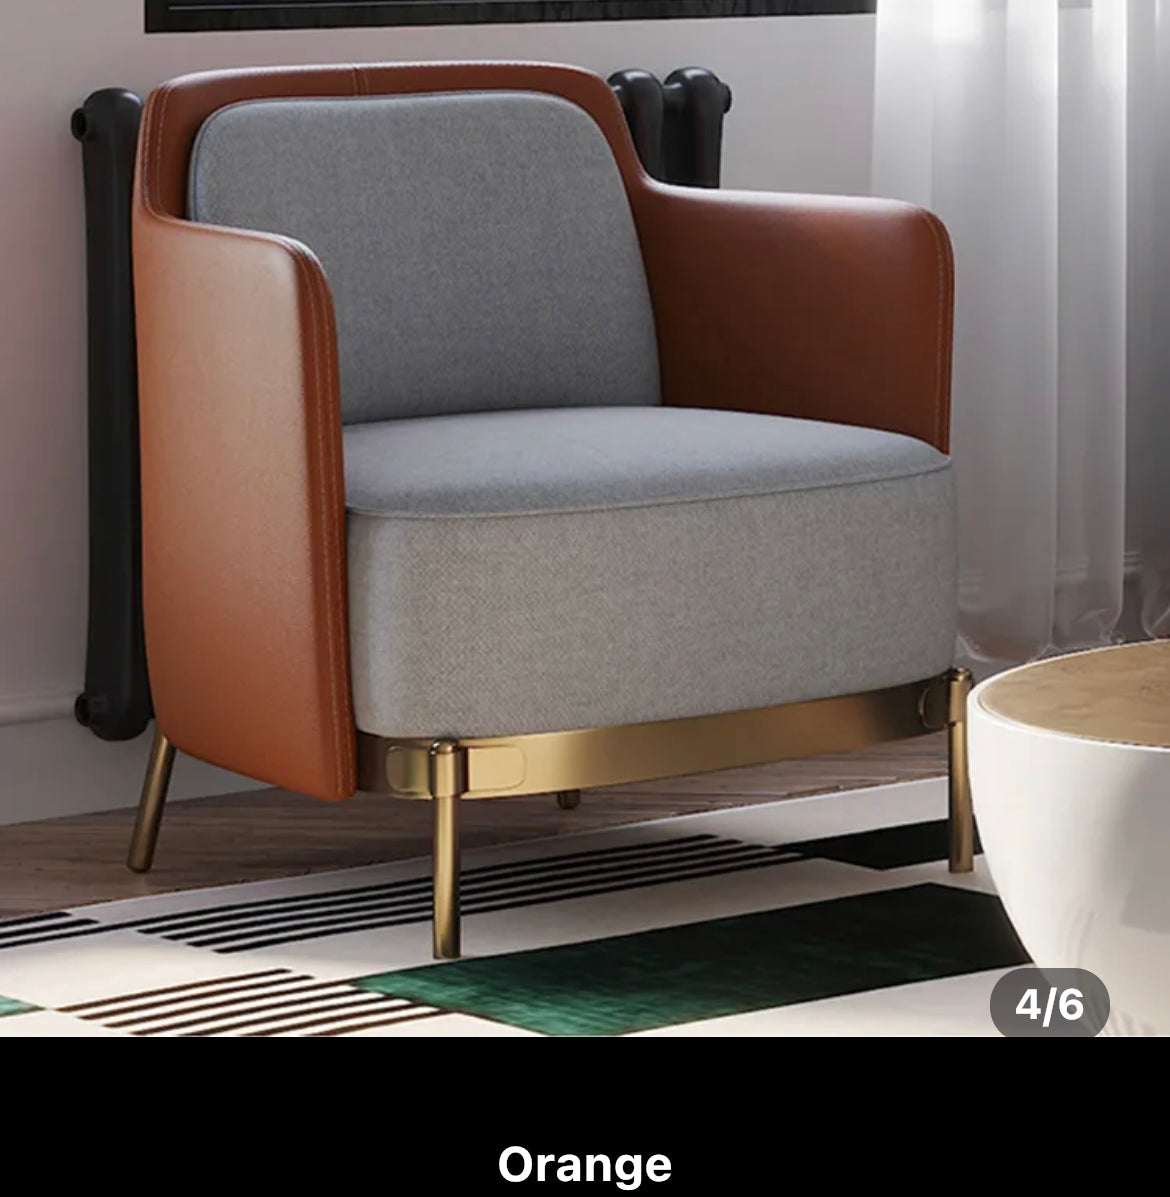 Fauteuil design salon loisirs fauteuils en acier inoxydable